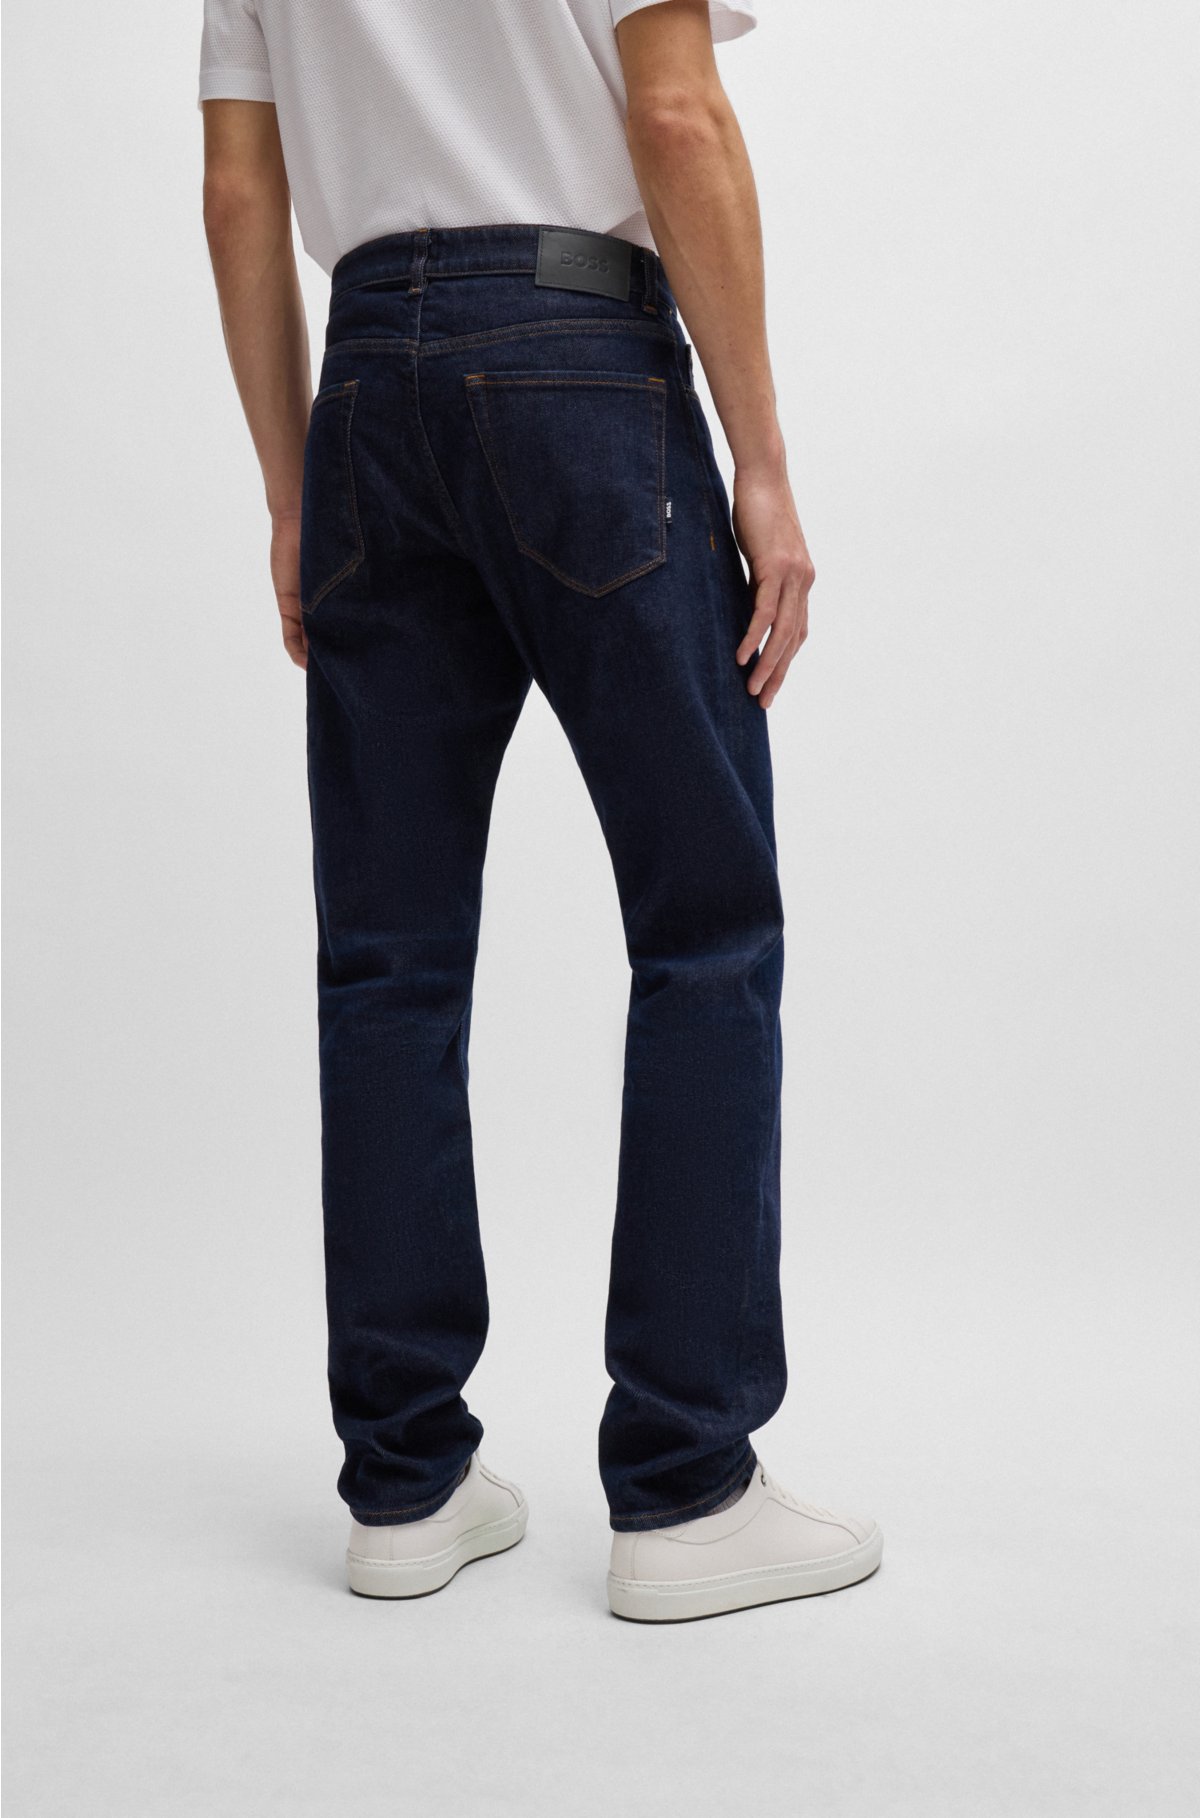 BOSS - Jeans med almindelig pasform mørkeblå denim med behagelig stræk